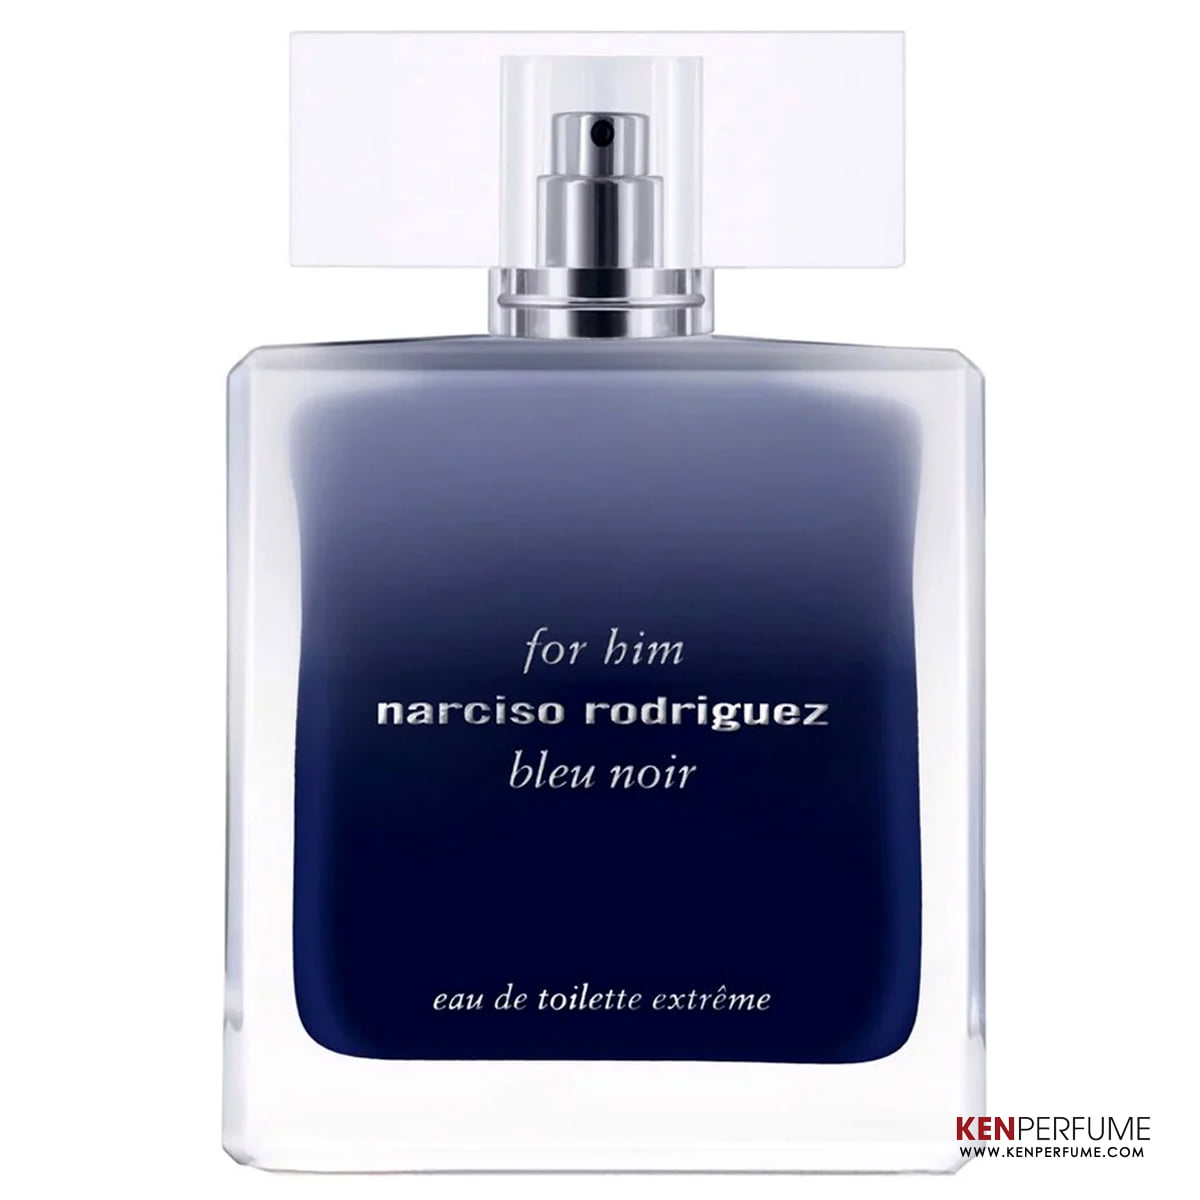 Narciso Rodriguez for Him Bleu Noir EDT | Nuochoarosa.com - Nước hoa cao  cấp, chính hãng giá tốt, mẫu mới